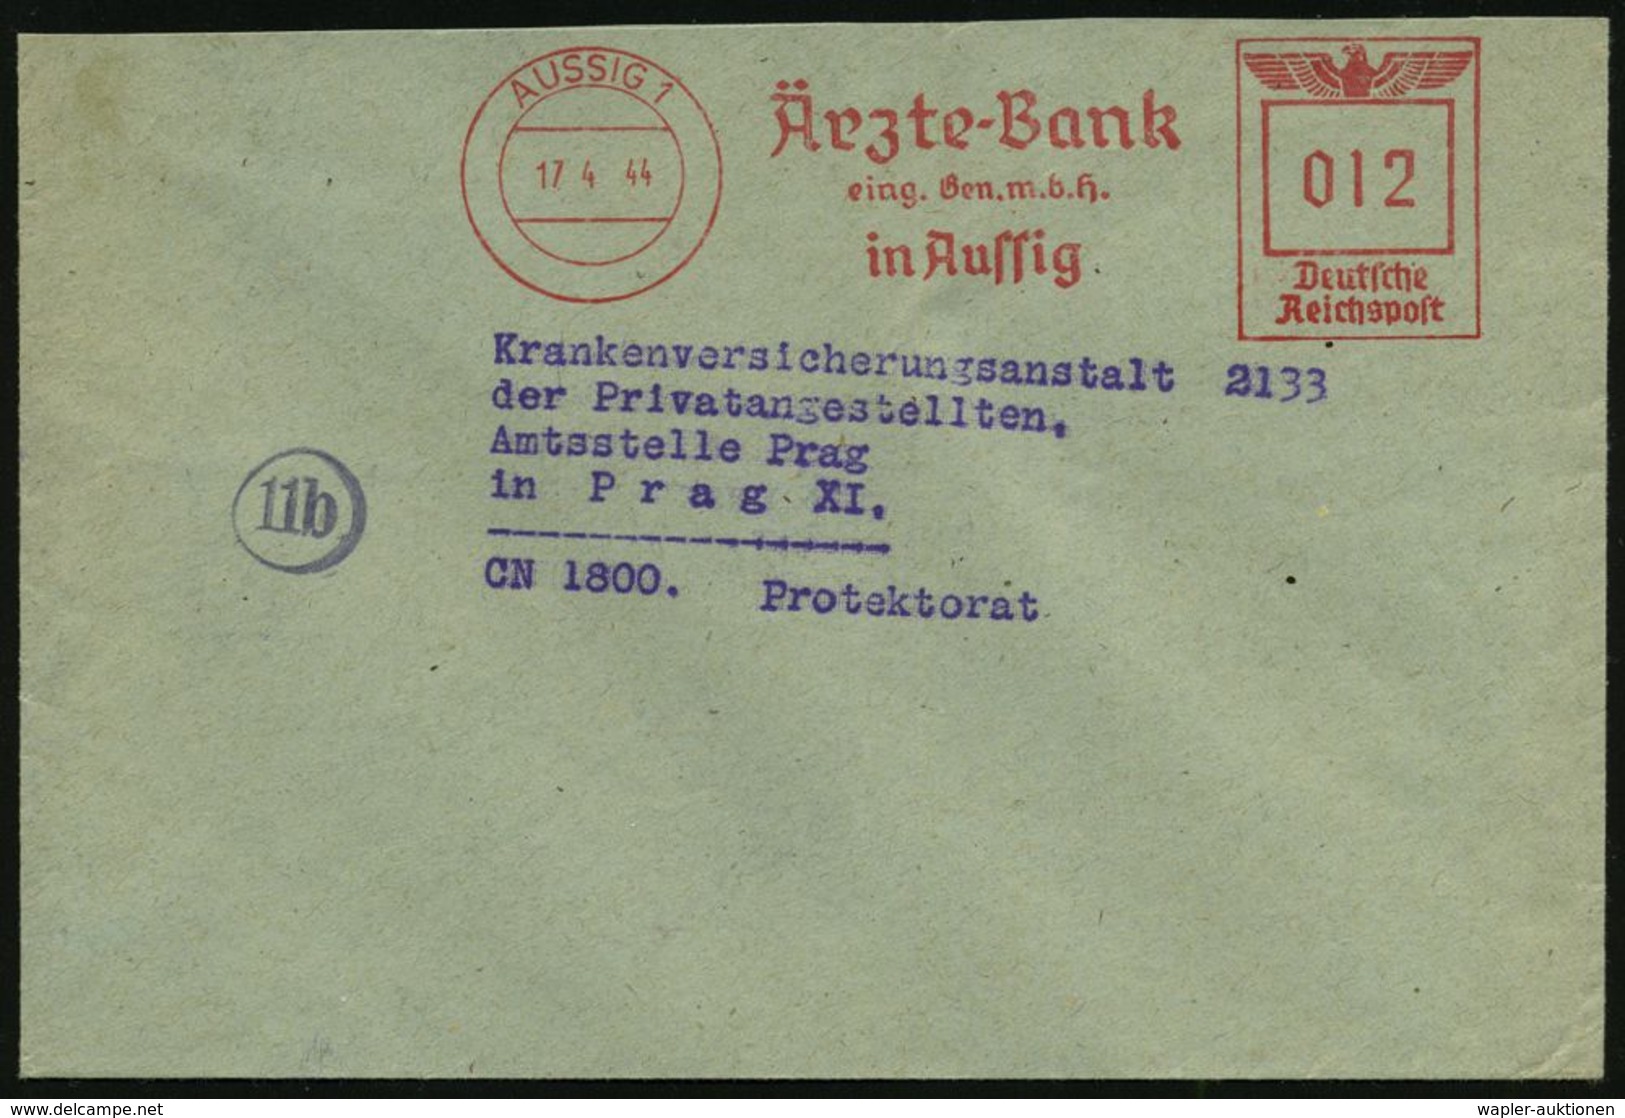 MEDIZIN / GESUNDHEITSWESEN : AUSSIG 1/ Ärzte-Bank/ Eing.Gen.m.b.H. 1944 (17.4.) AFS 012 Pf. Inl.-Tarif N. Prag (Böhmen & - Médecine